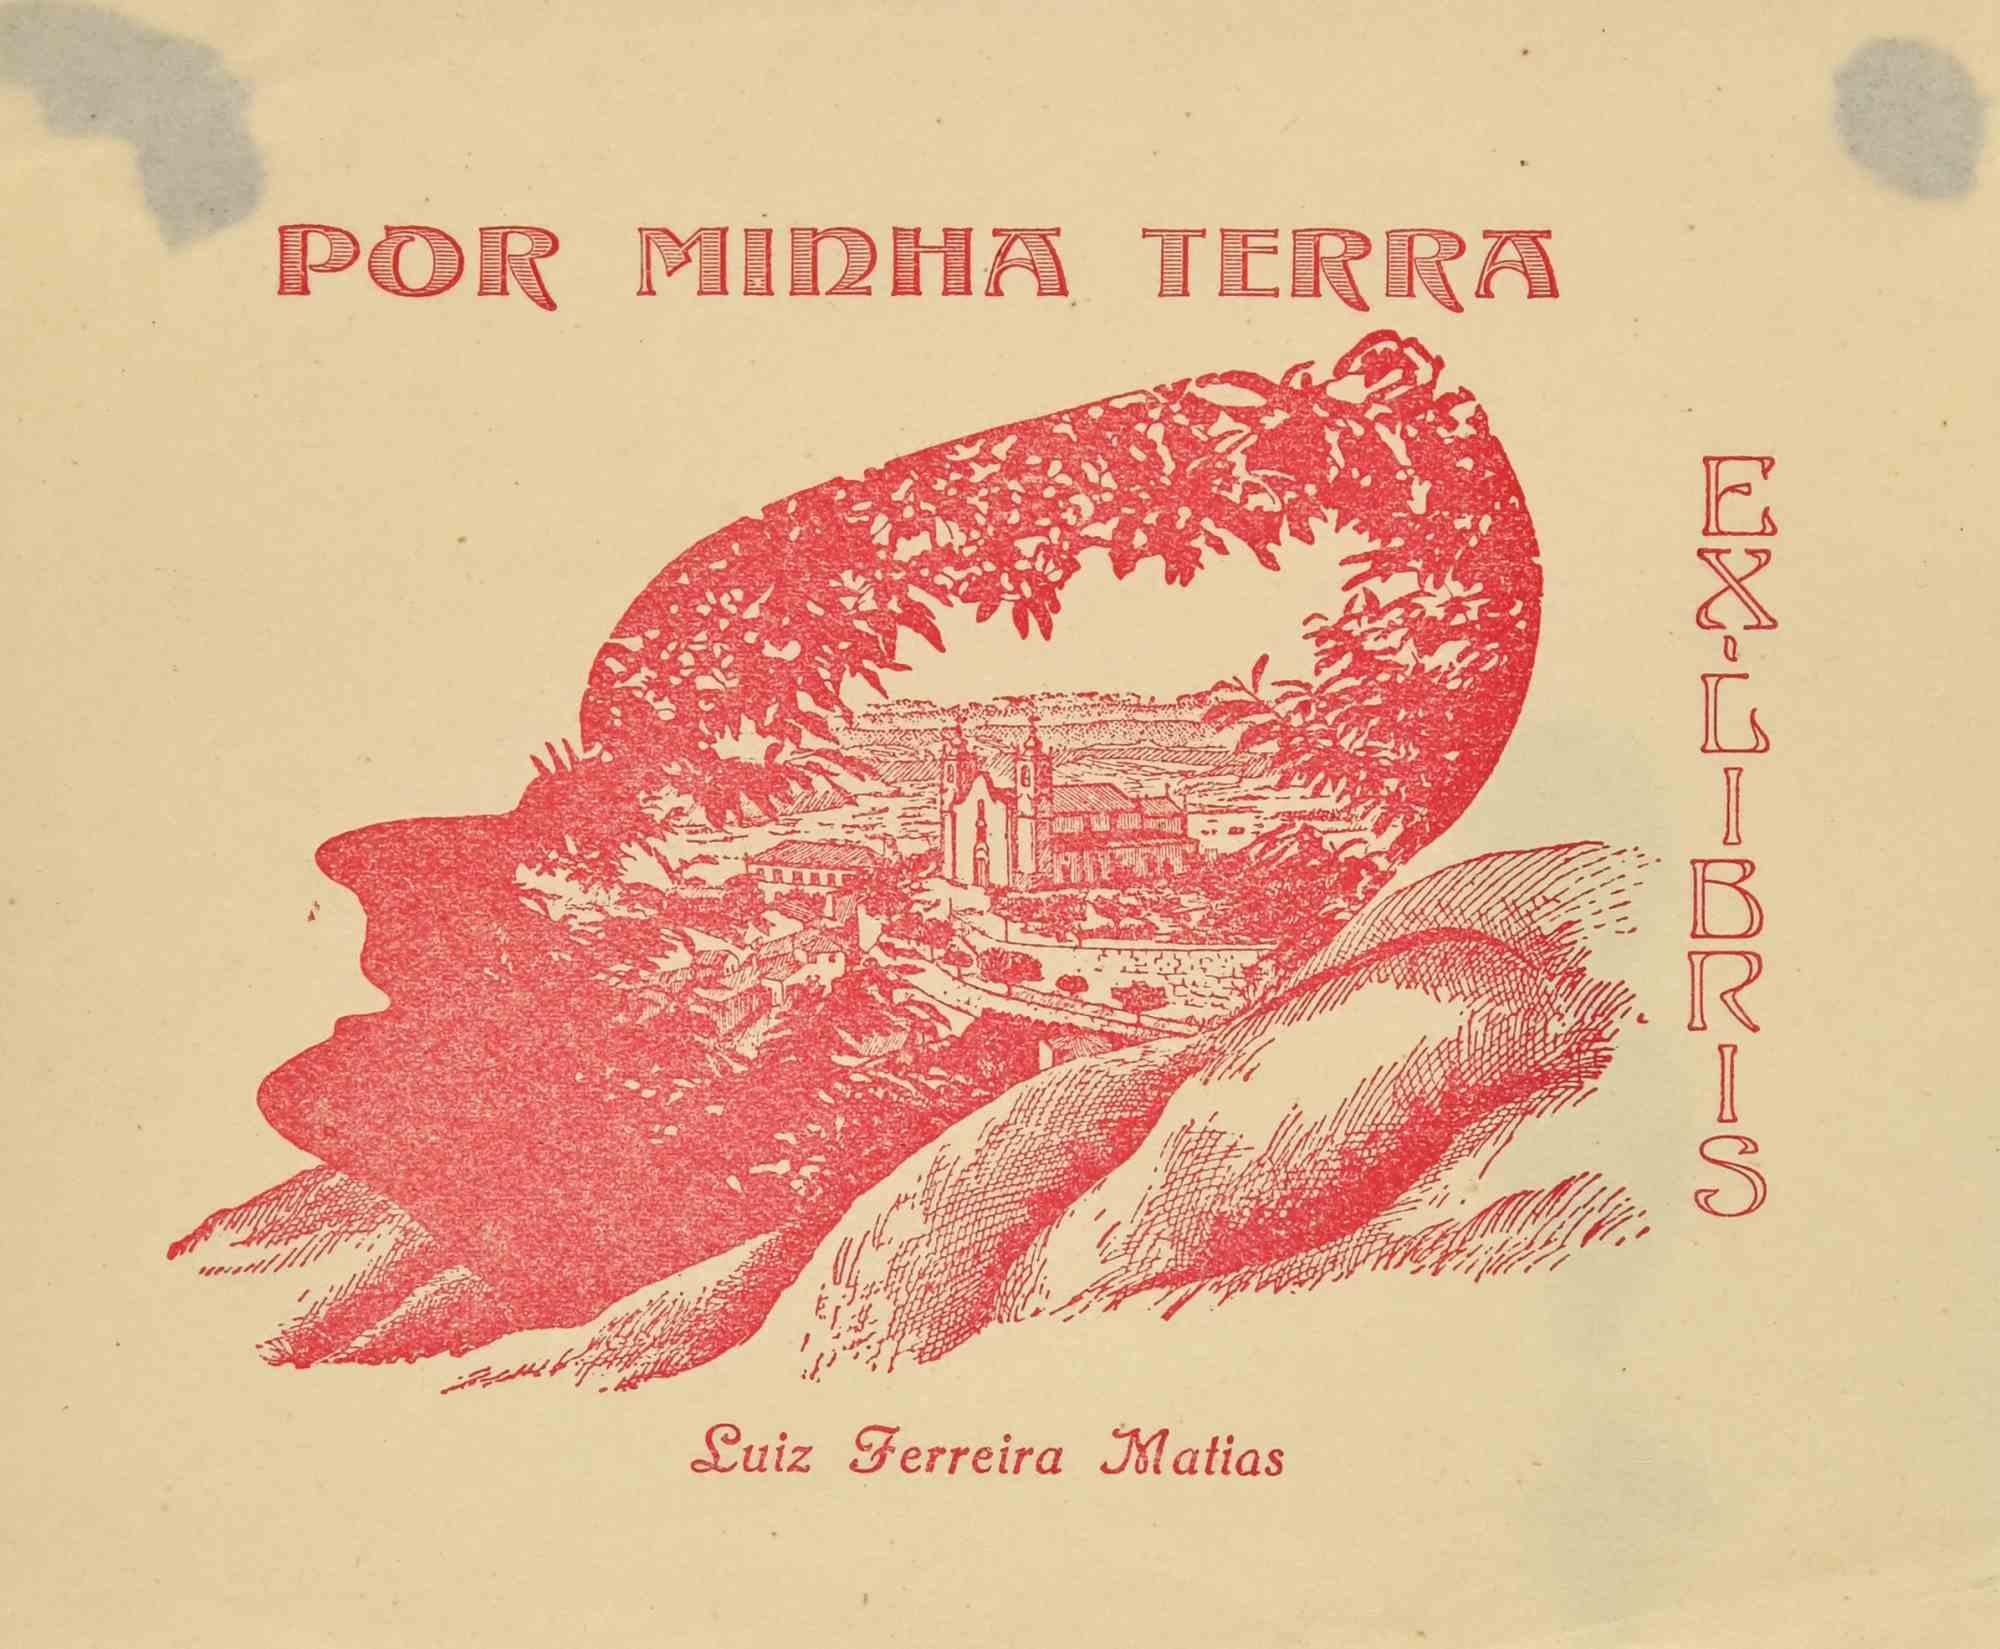 Unknown Figurative Print - Ex Libris - Por minha terra. Luiz Ferreira Matias - Woodcut - Mid 20th Century